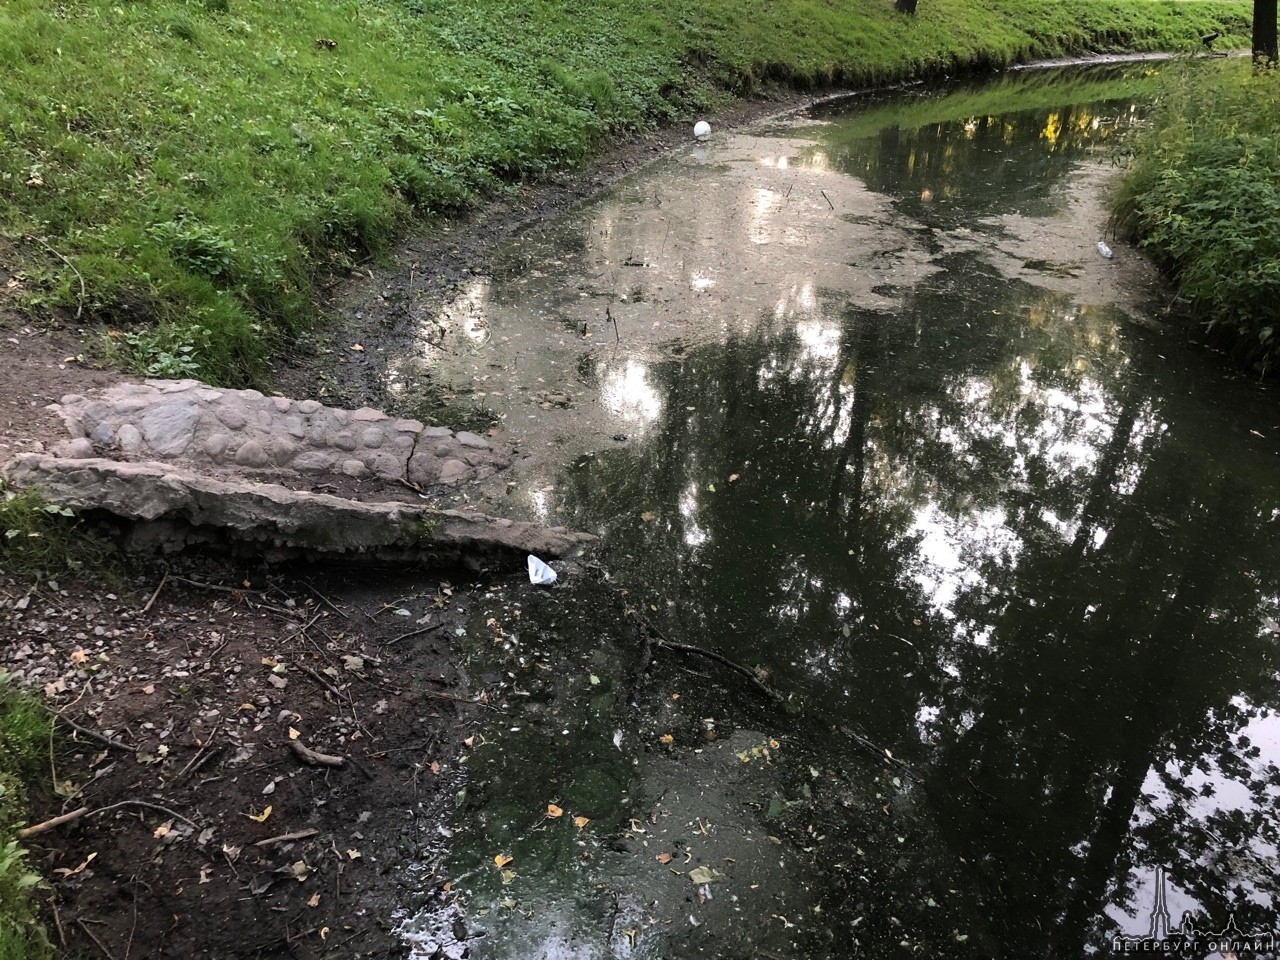 Активисты Центрального района сообщили об ужасающем состоянии прудов в Таврическом саду. В саду пре...